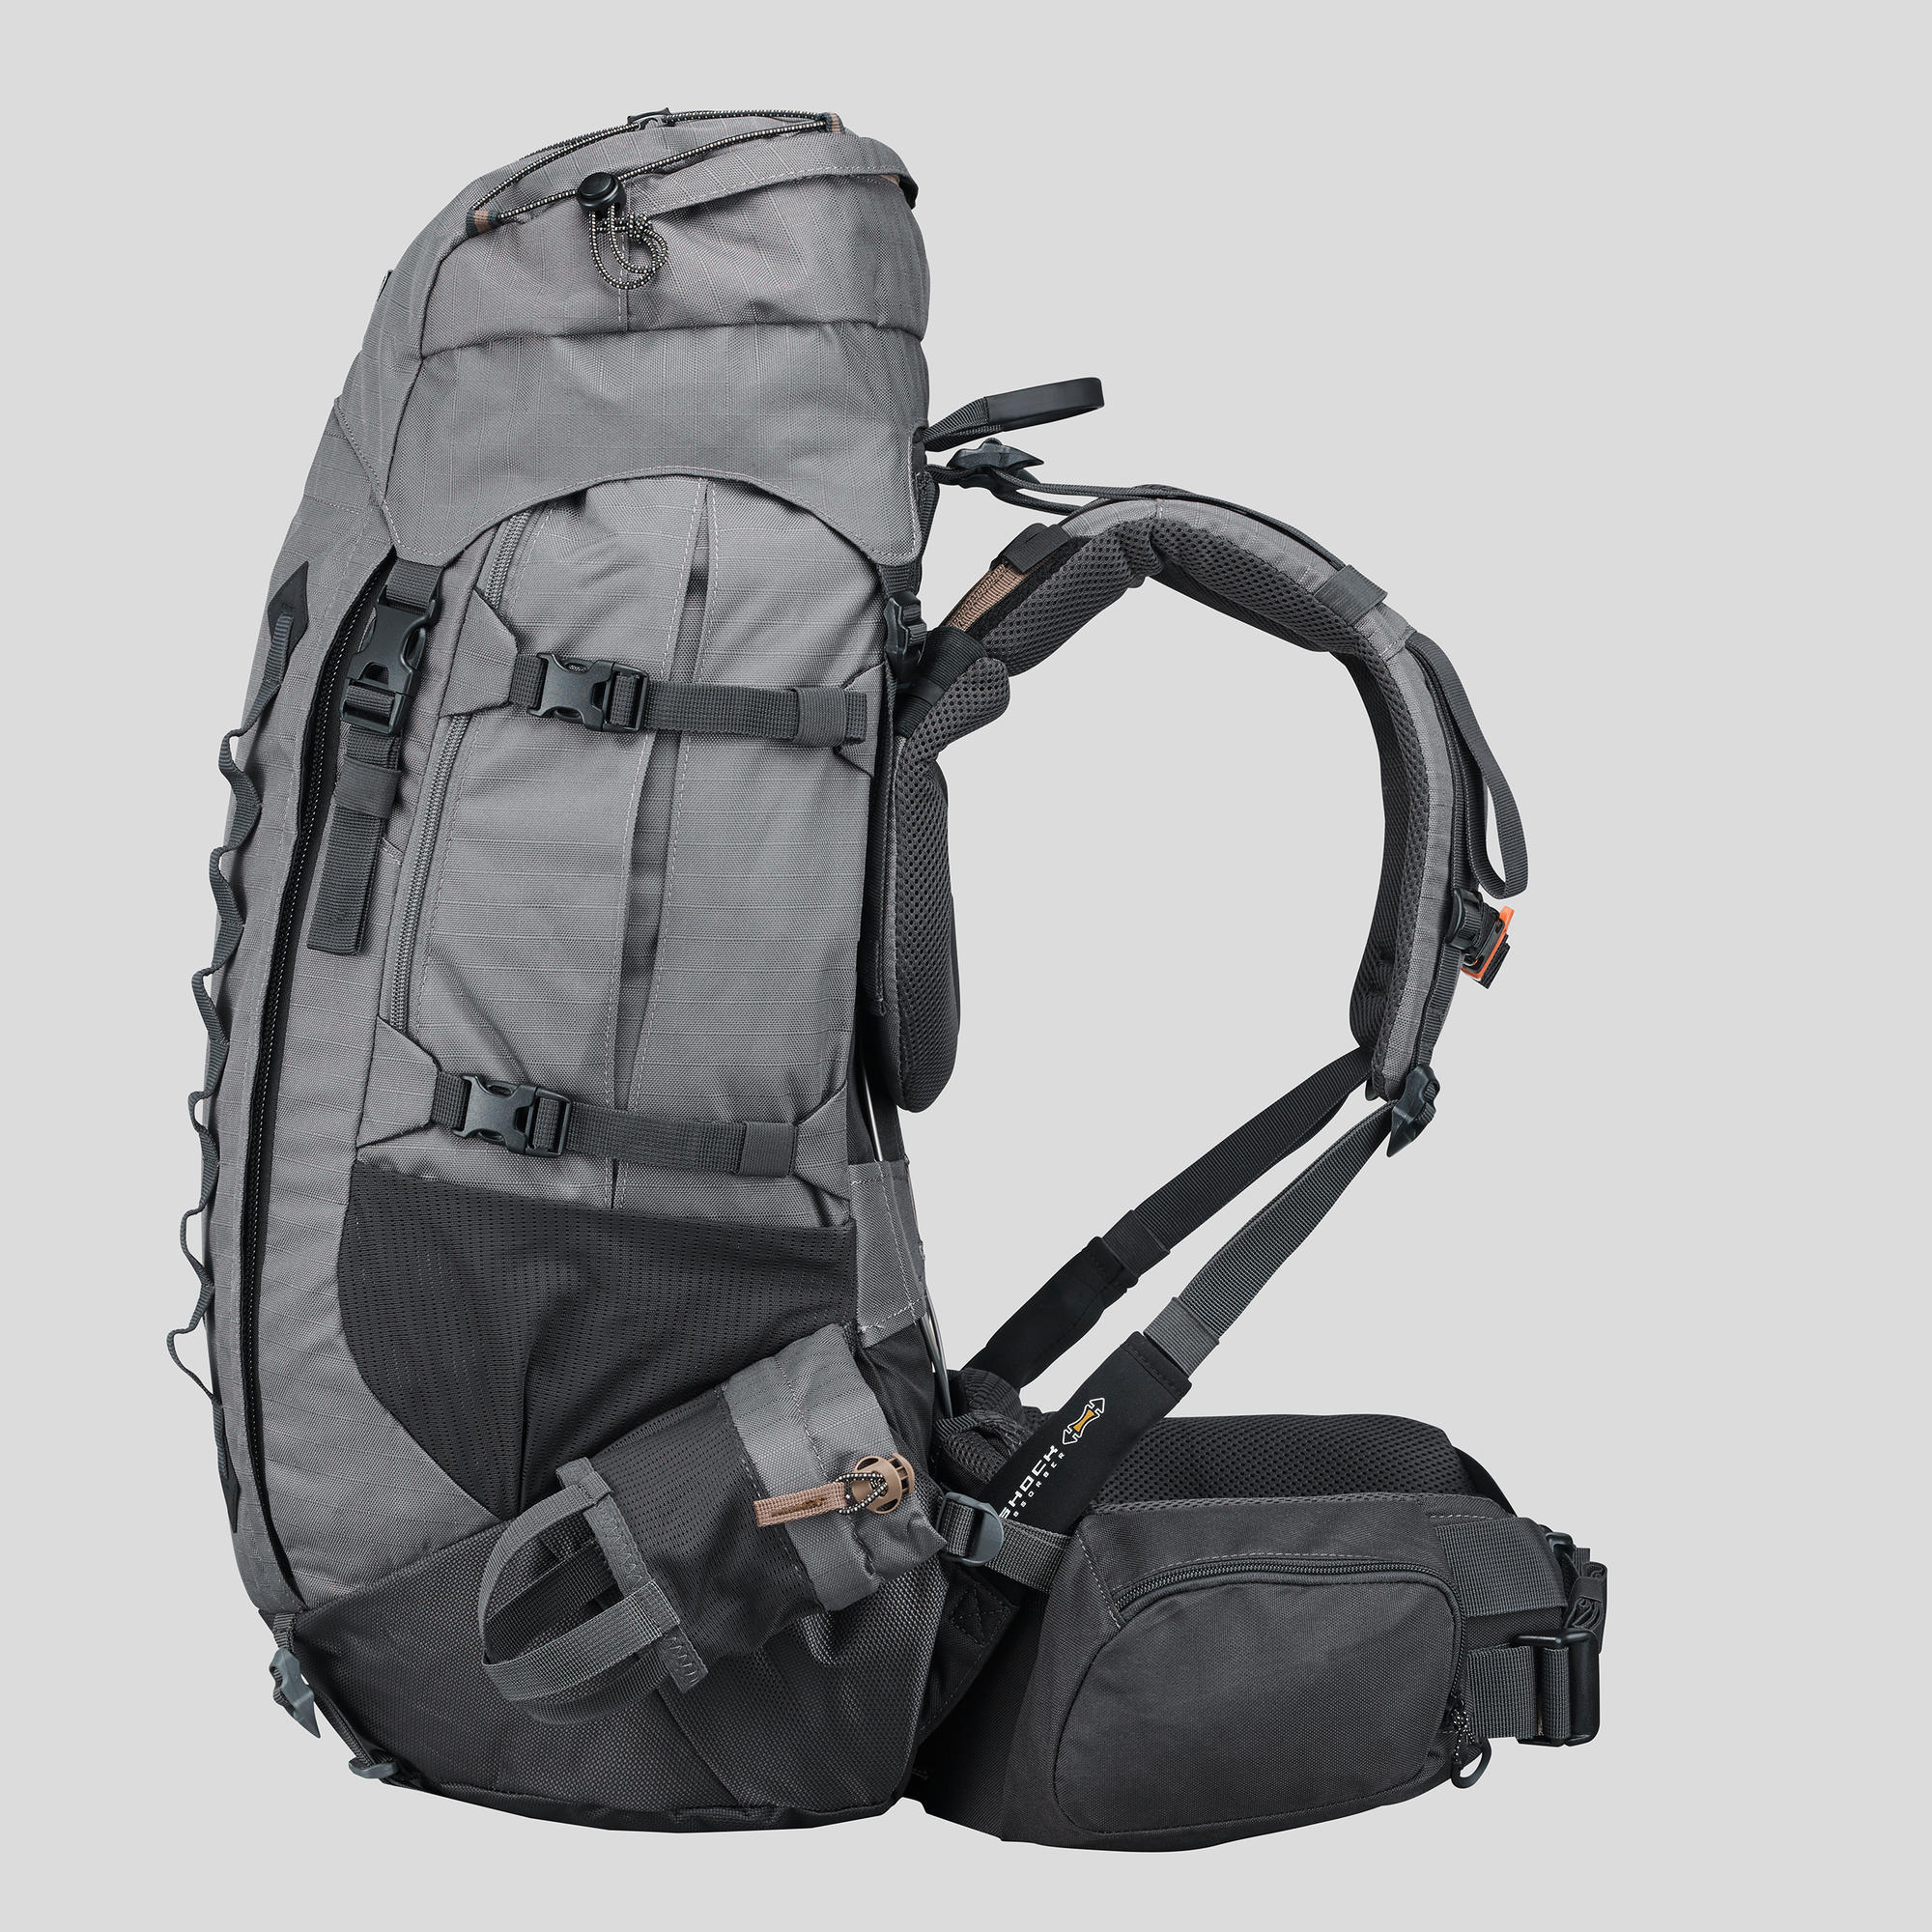 decathlon trek 900 backpack